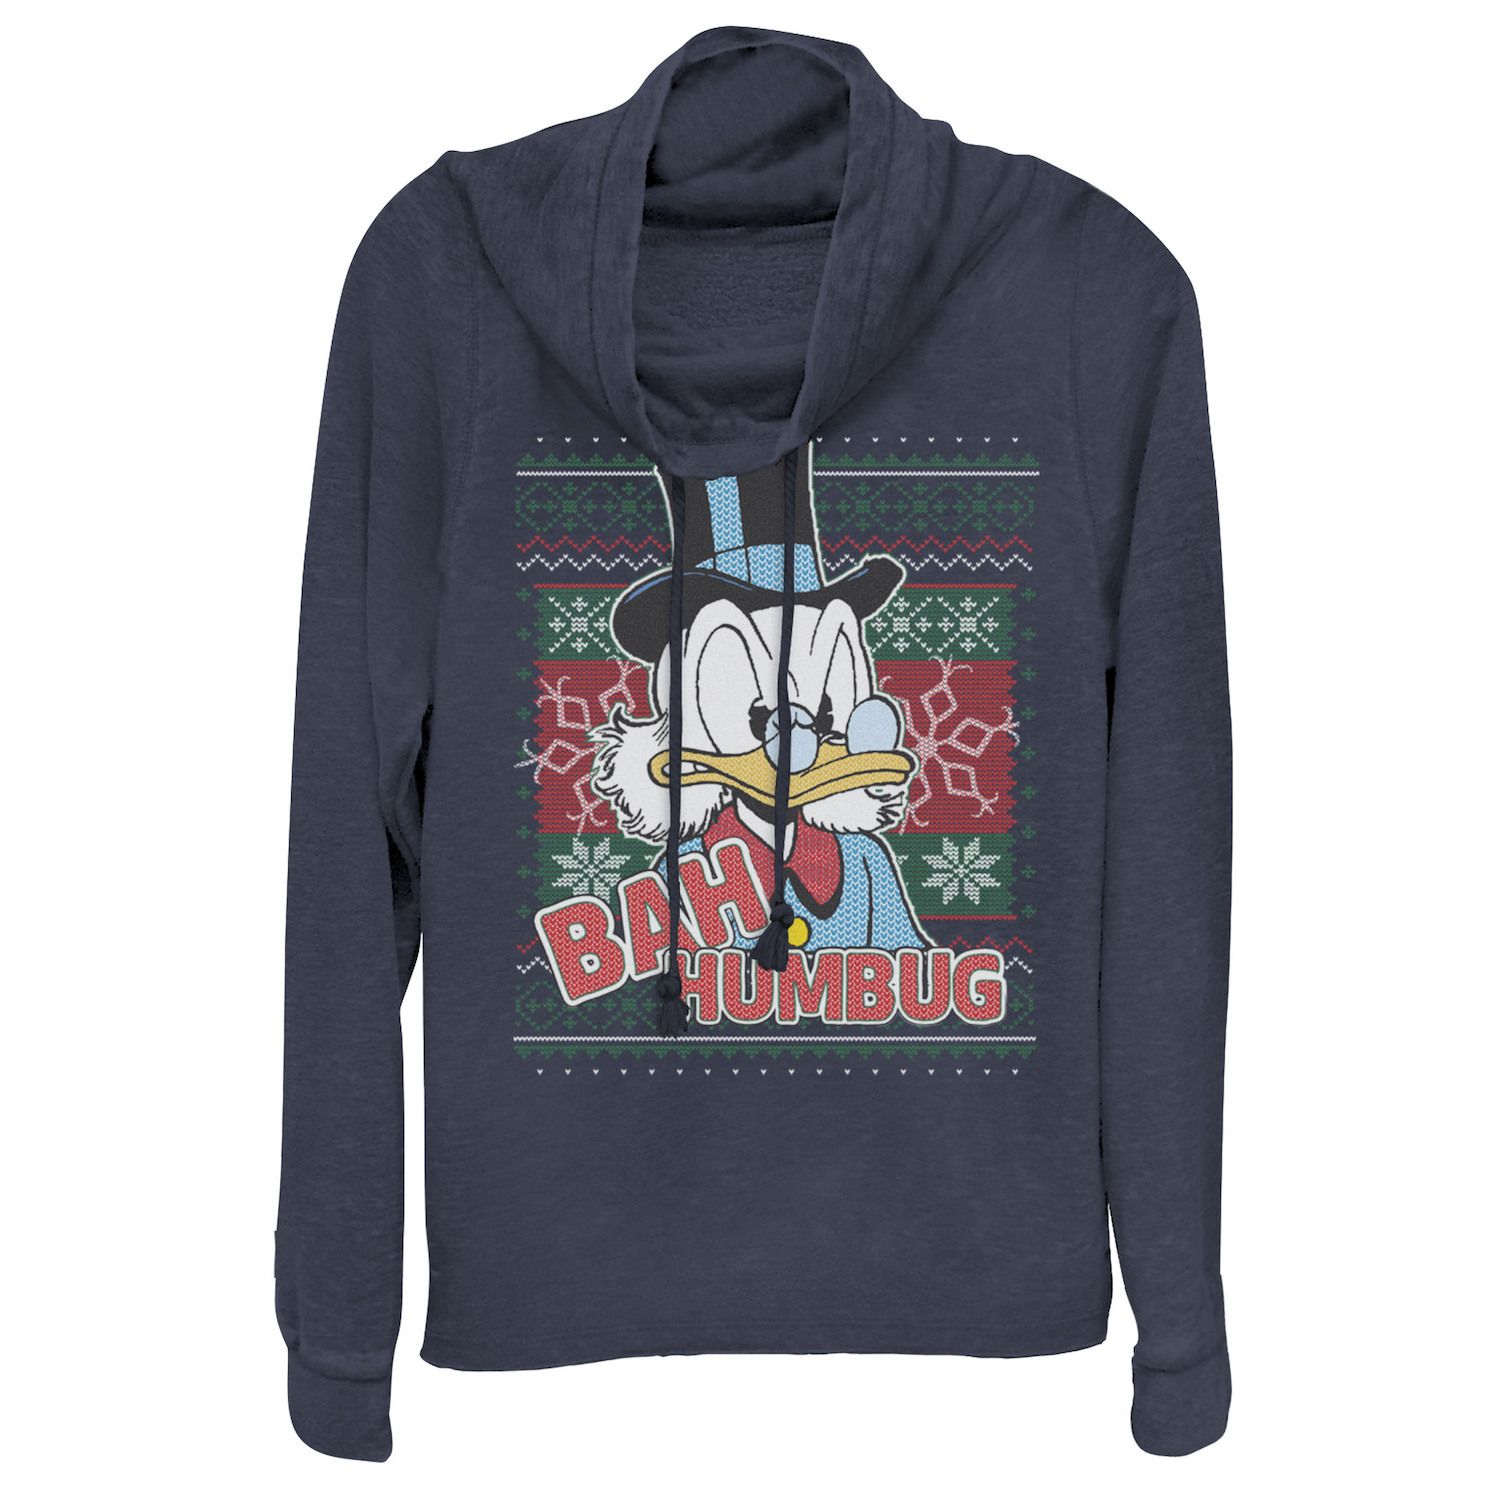 Рождественский свитер Bah Humbug Disney's Scrooge McDuck Juniors, пуловер с воротником-хомутом Licensed Character ripndip bah humbug